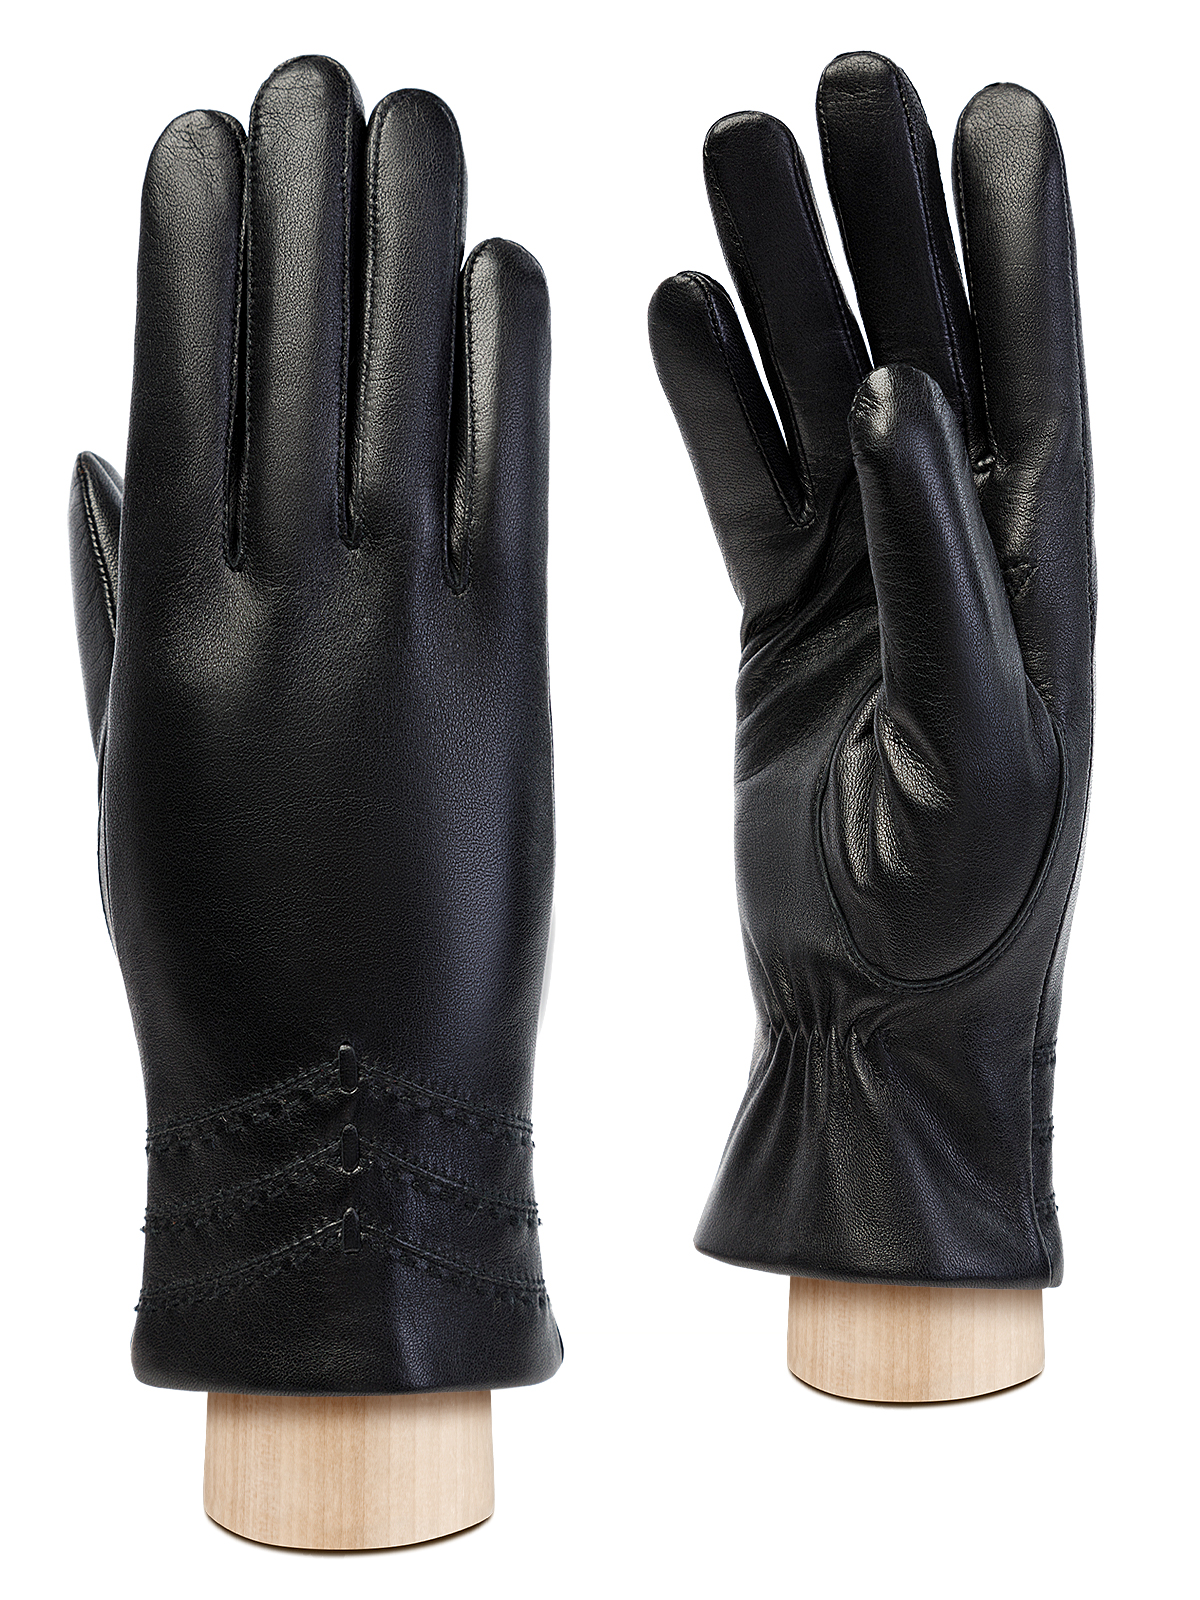 Перчатки женские Eleganzza HP413 черные р. 6,5